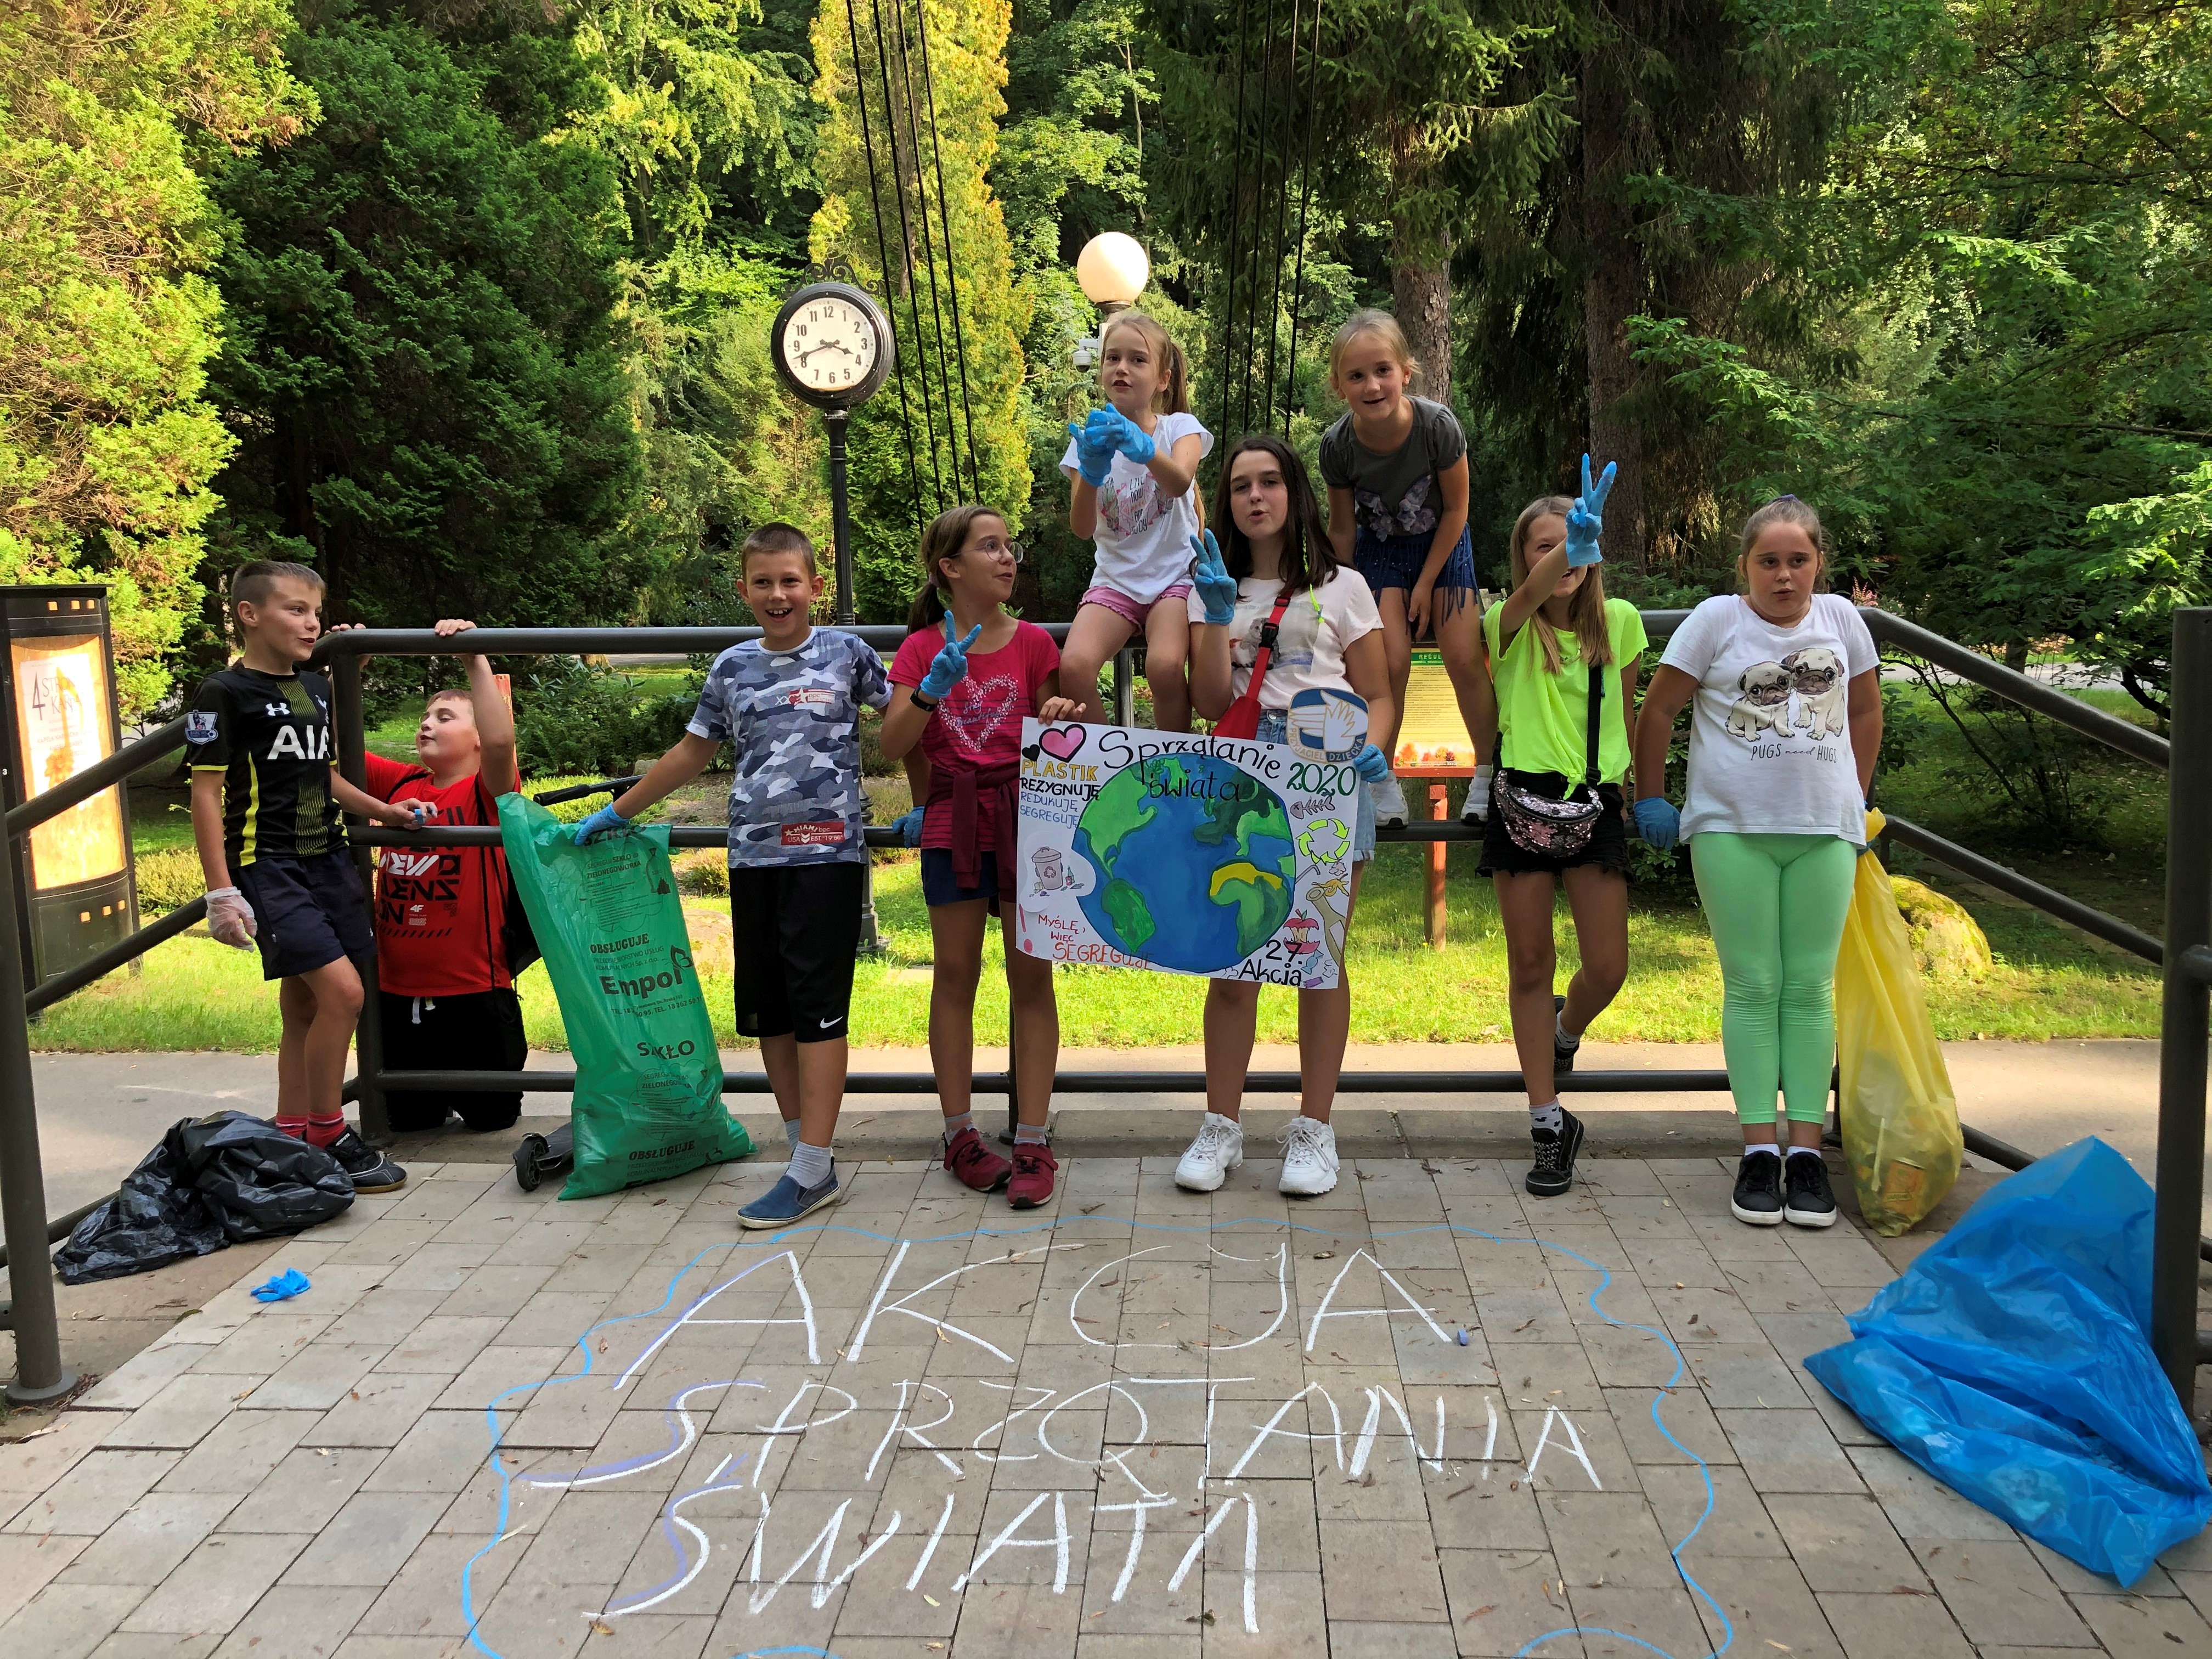 Grupka dzieci stojąca w Parku Miejskim w Gorlicach z plakatem promującym akcję sprzątania świata